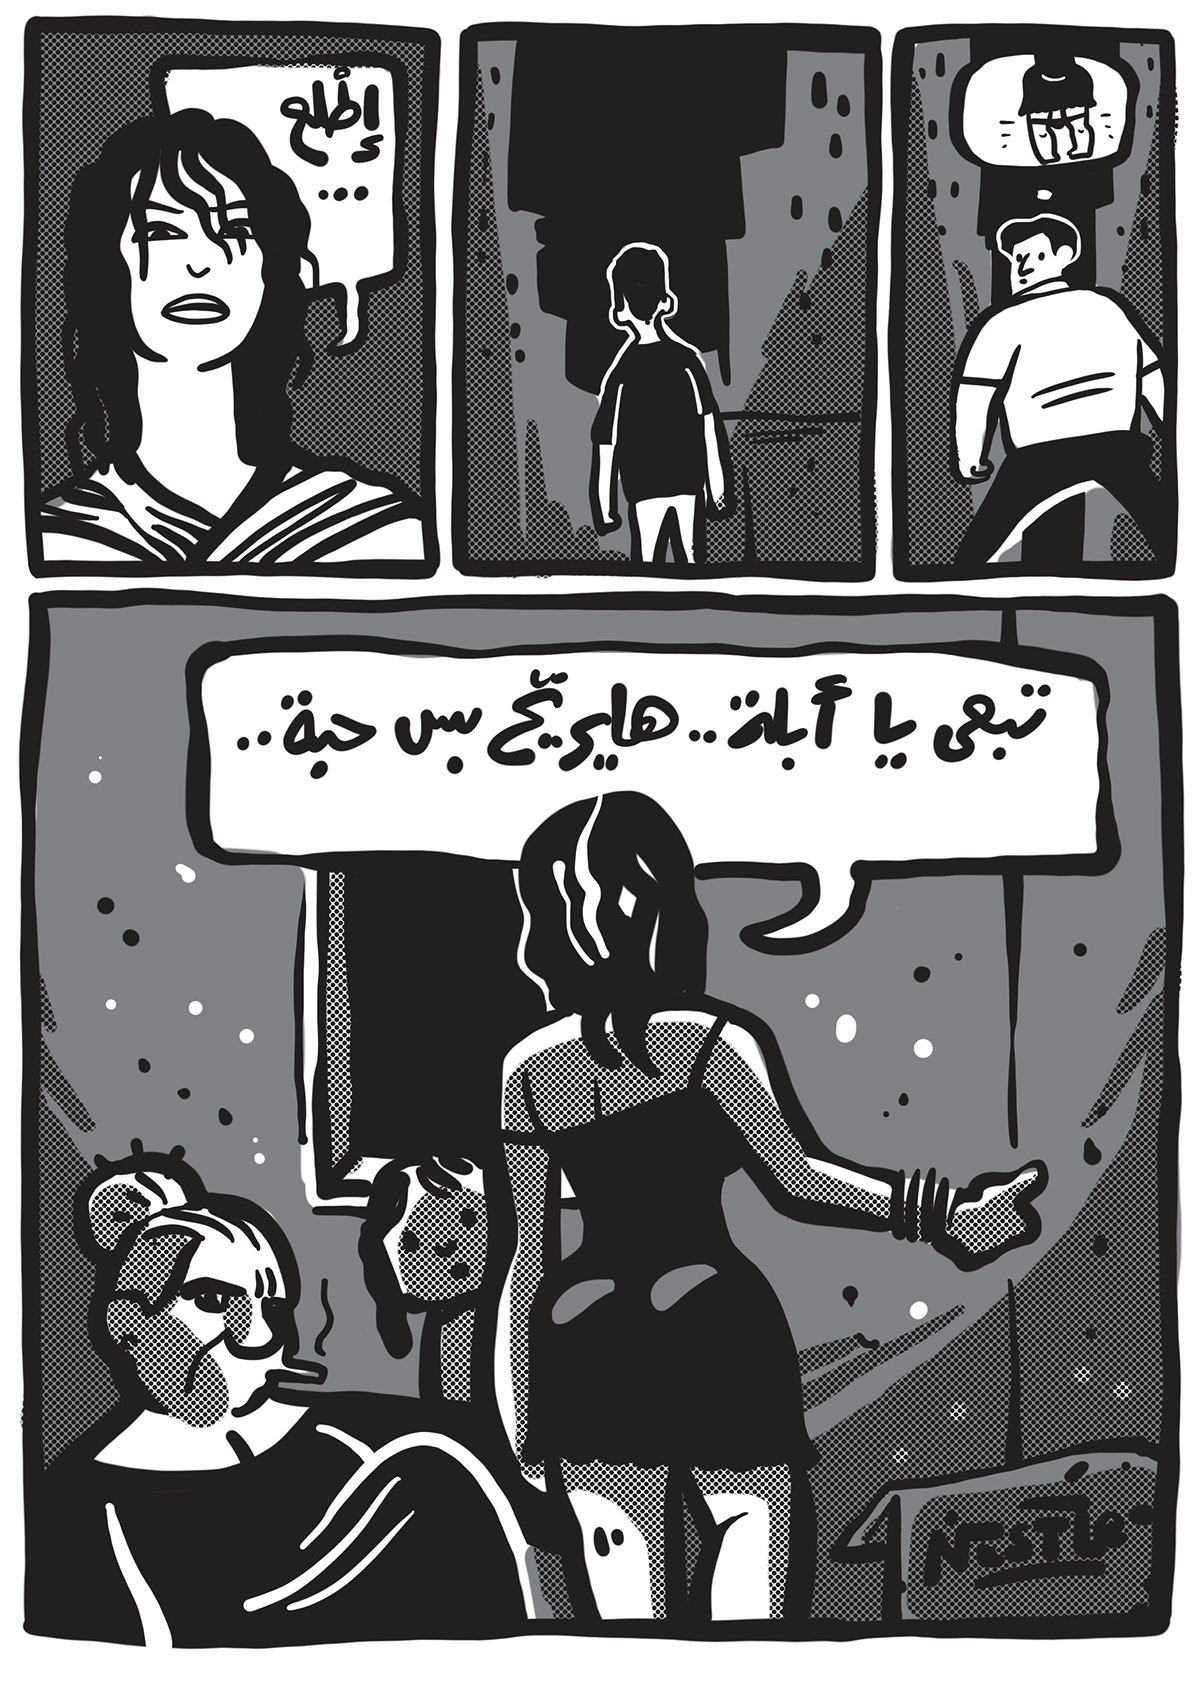 Tok Tok andeel comics egypt Marathon money pooverty Young freedom